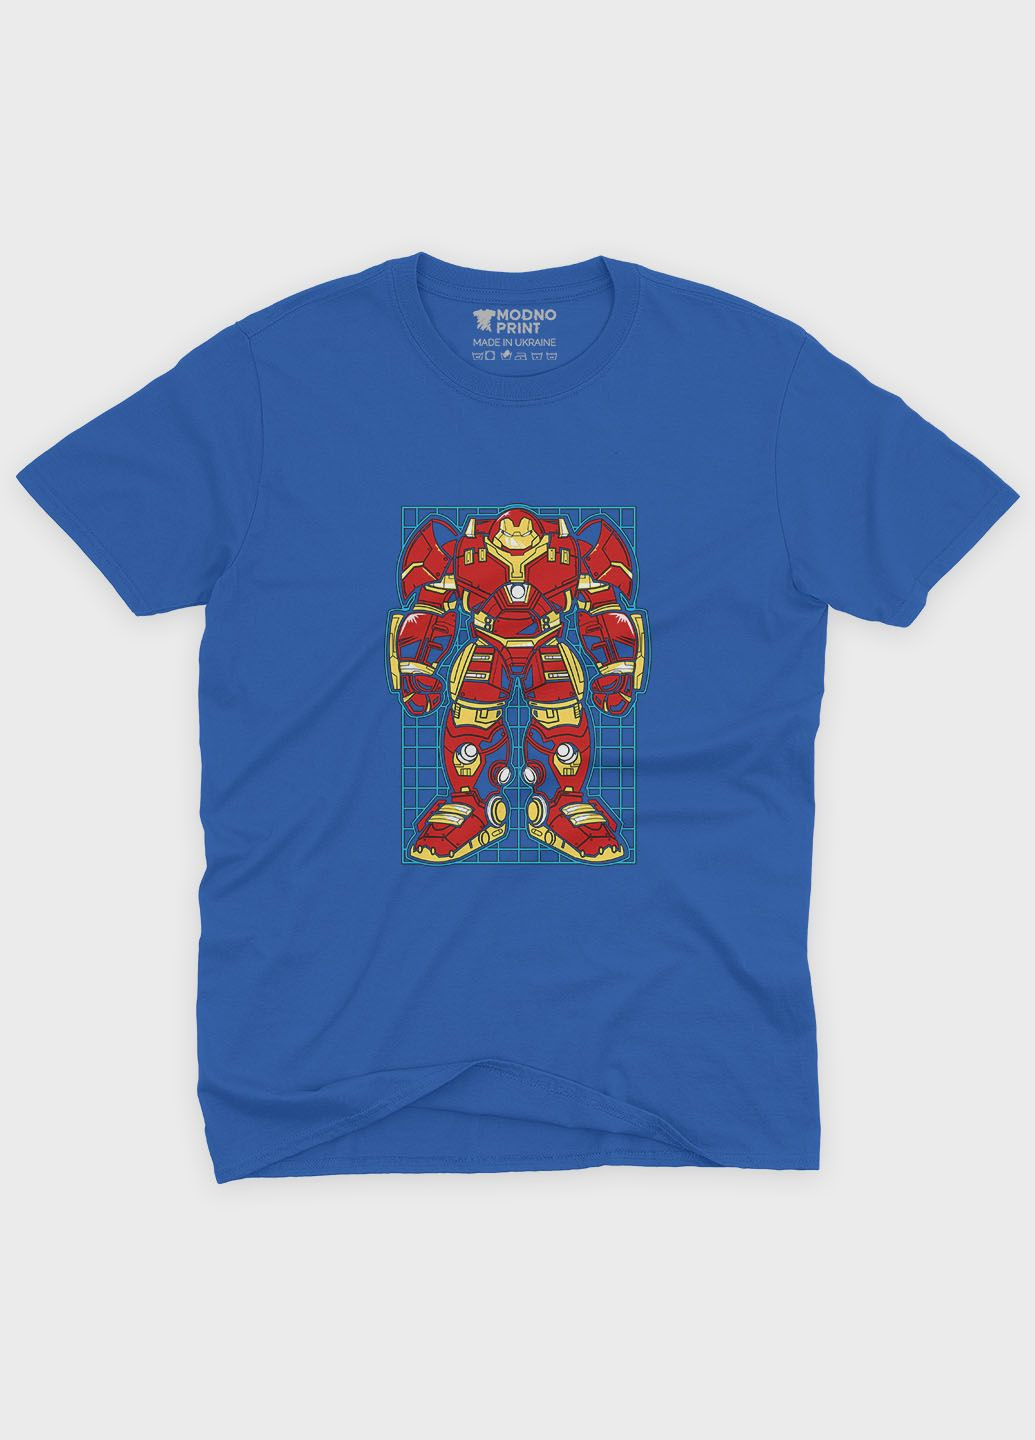 Синяя демисезонная футболка для мальчика с принтом супергероя - железный человек (ts001-1-brr-006-016-004-b) Modno